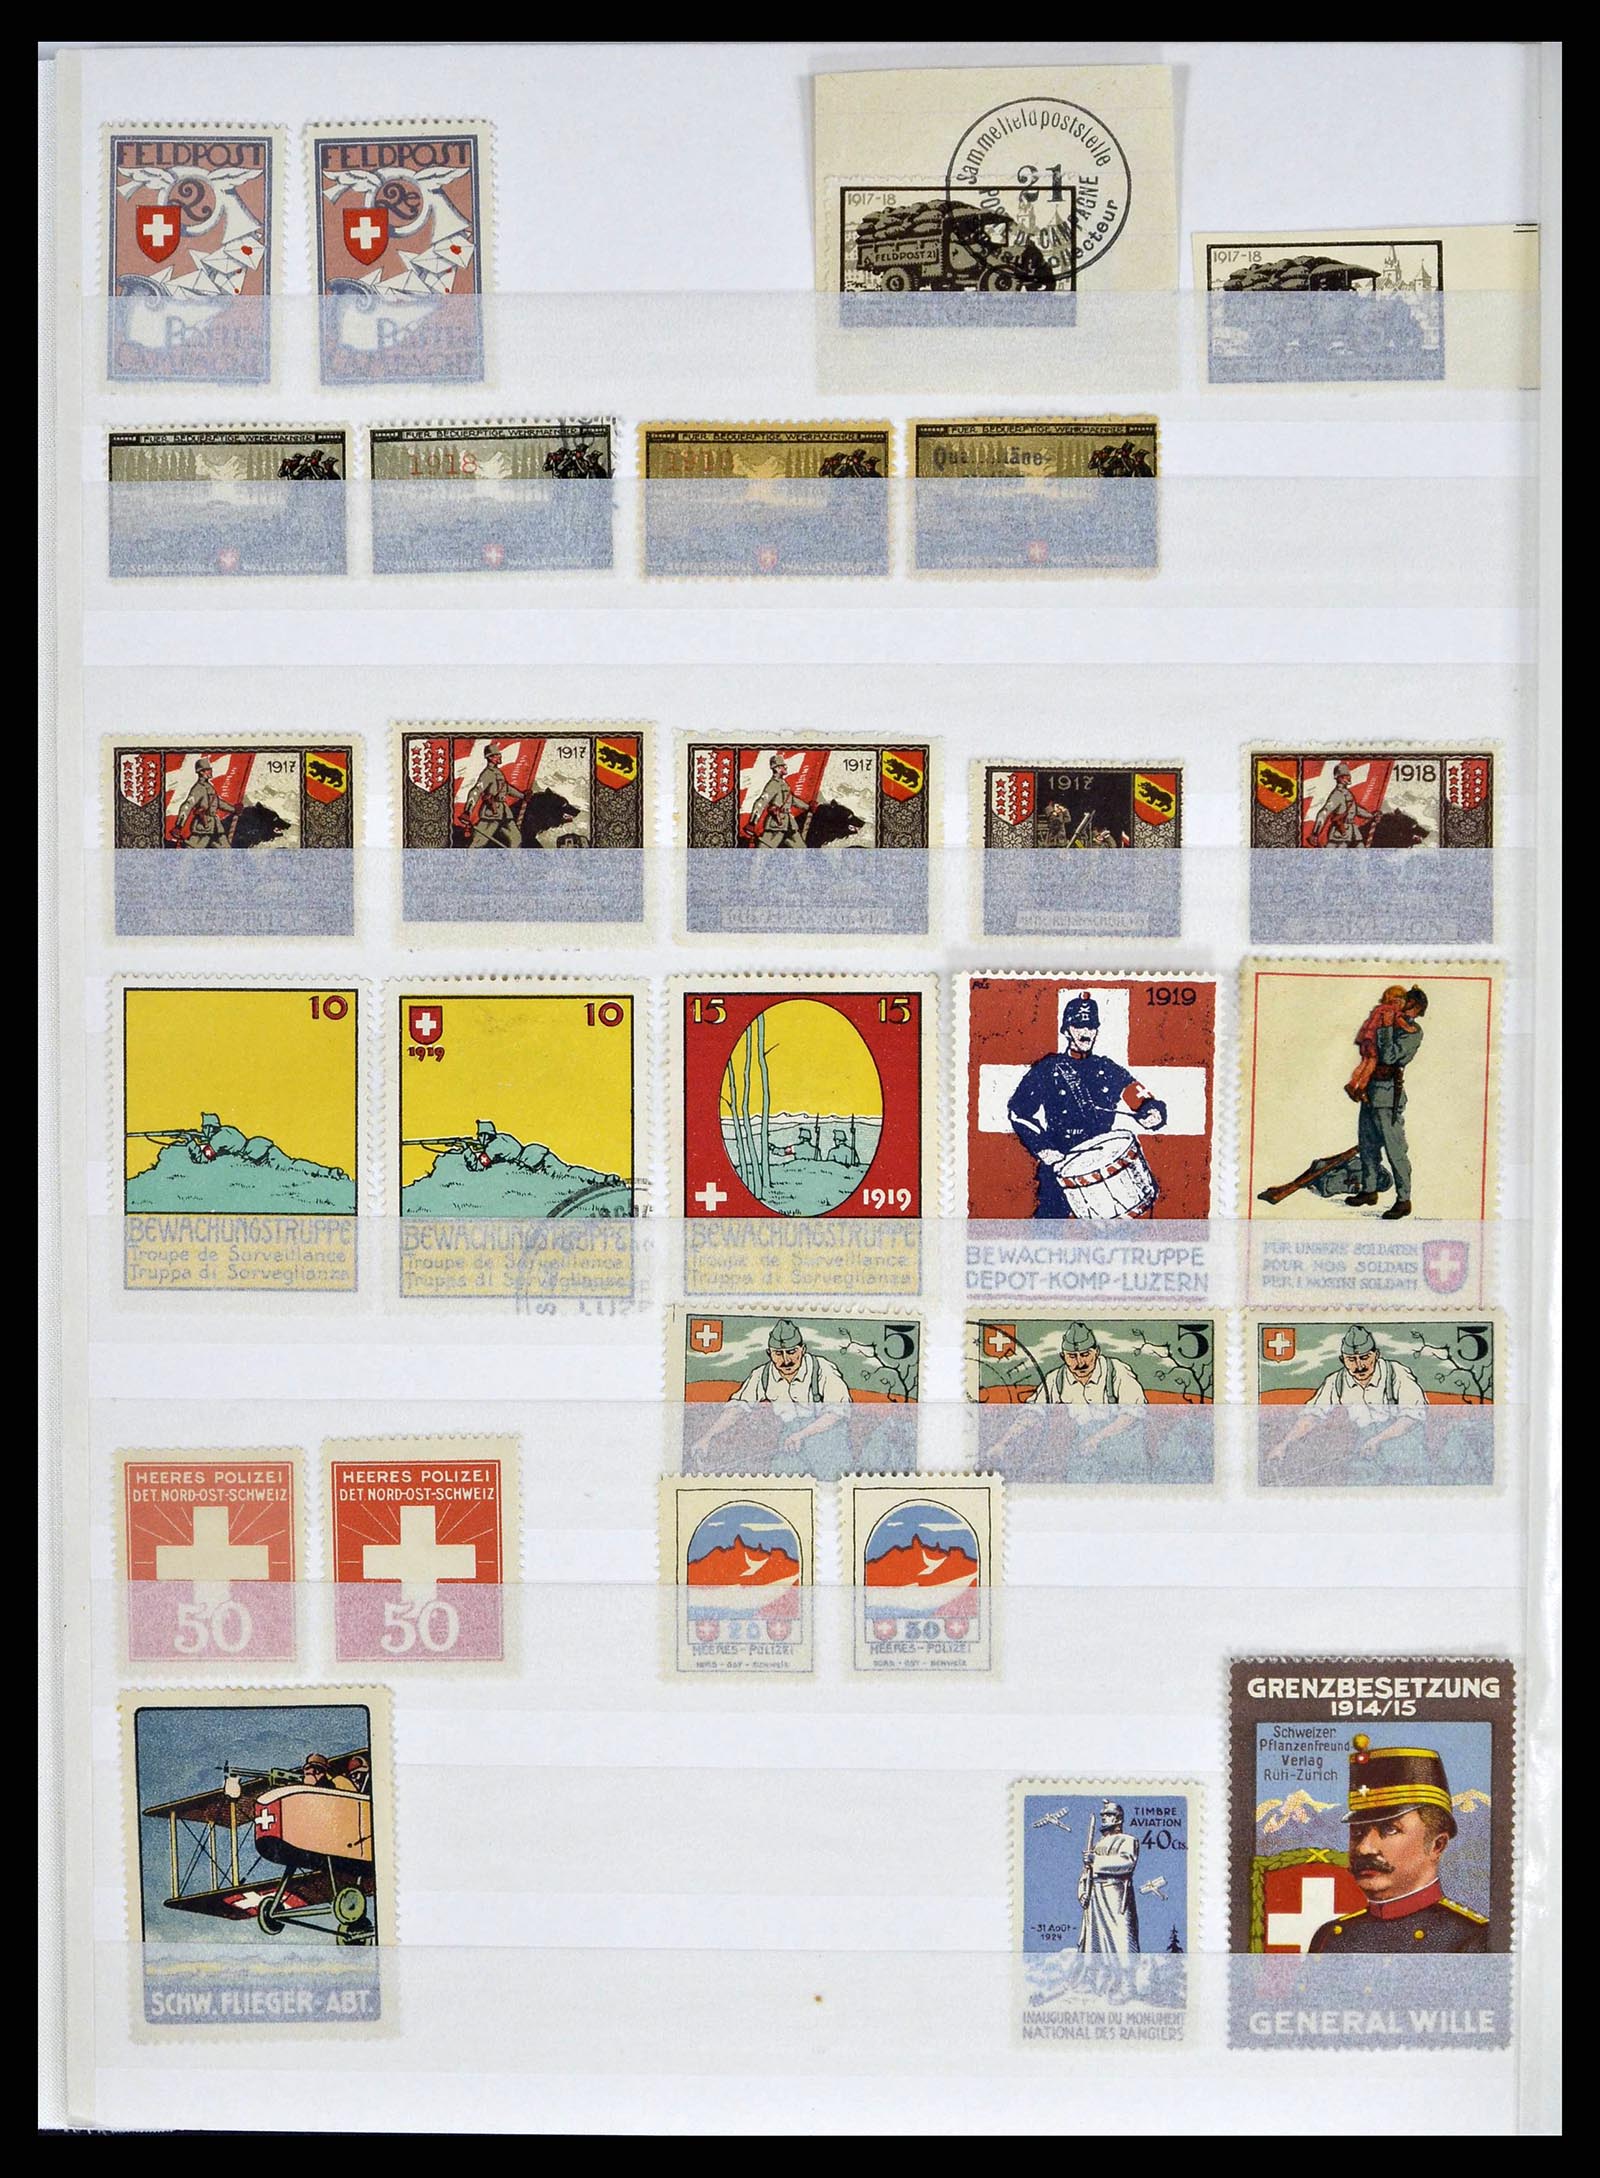 38695 0008 - Stamp collection 38695 Switzerland soldierstamps 1914-1945.